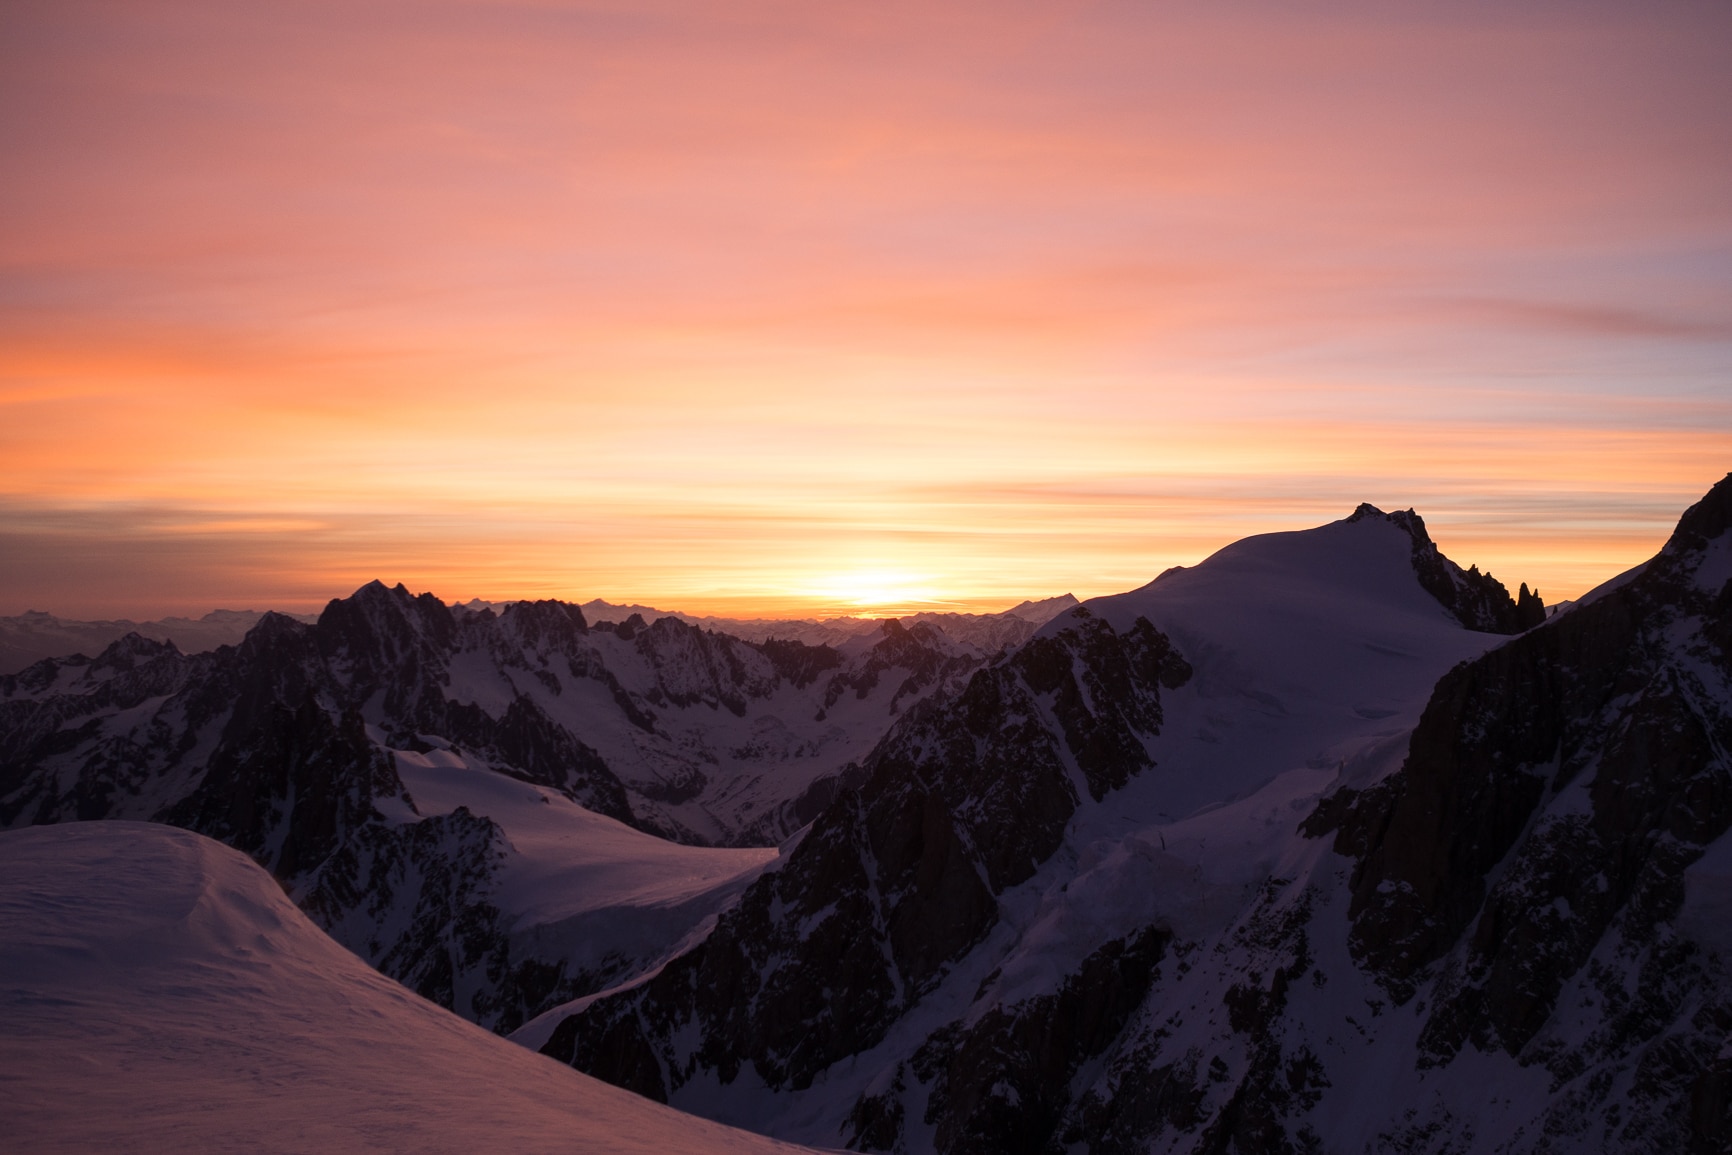 Morgenstimmung am Weg zum höchsten Berg Europas, dem Mont Blanc (4.810 m)